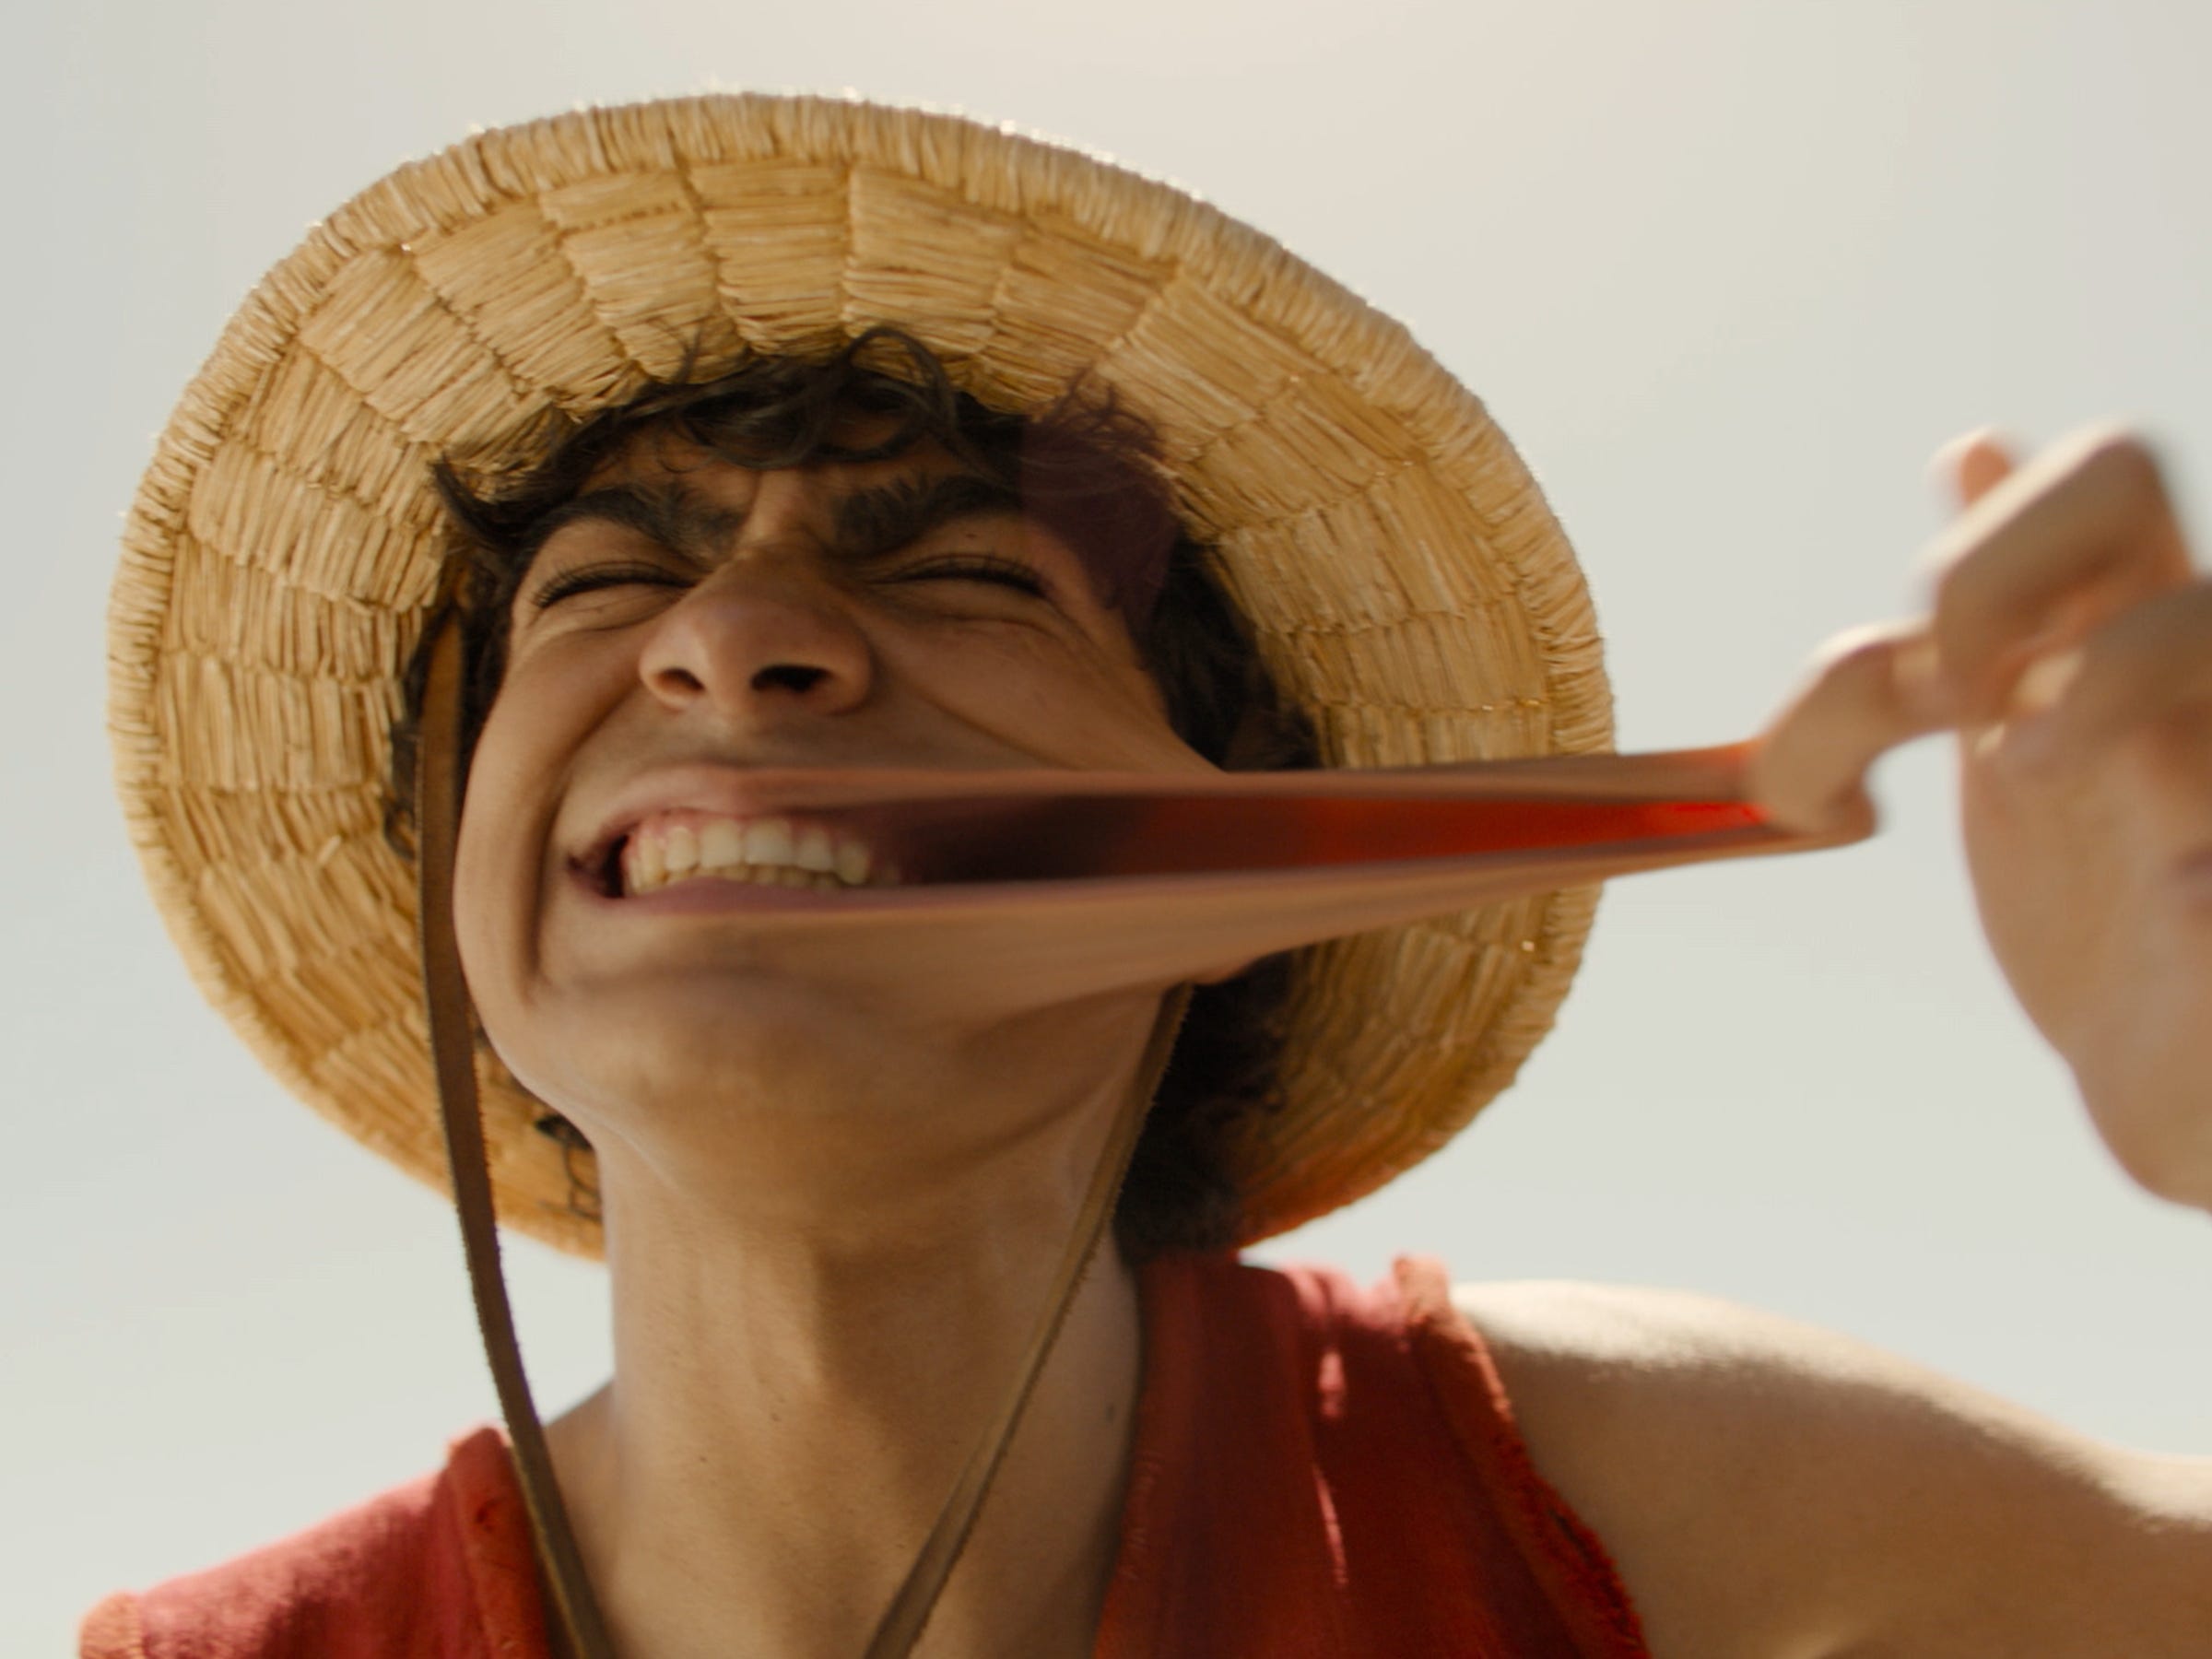 Iñaki Godoy als Ruffy in Netflixs One Piece.  Er streckt seine Wange heraus, demonstriert, dass er sich wie Gummi dehnen kann, und grinst breit